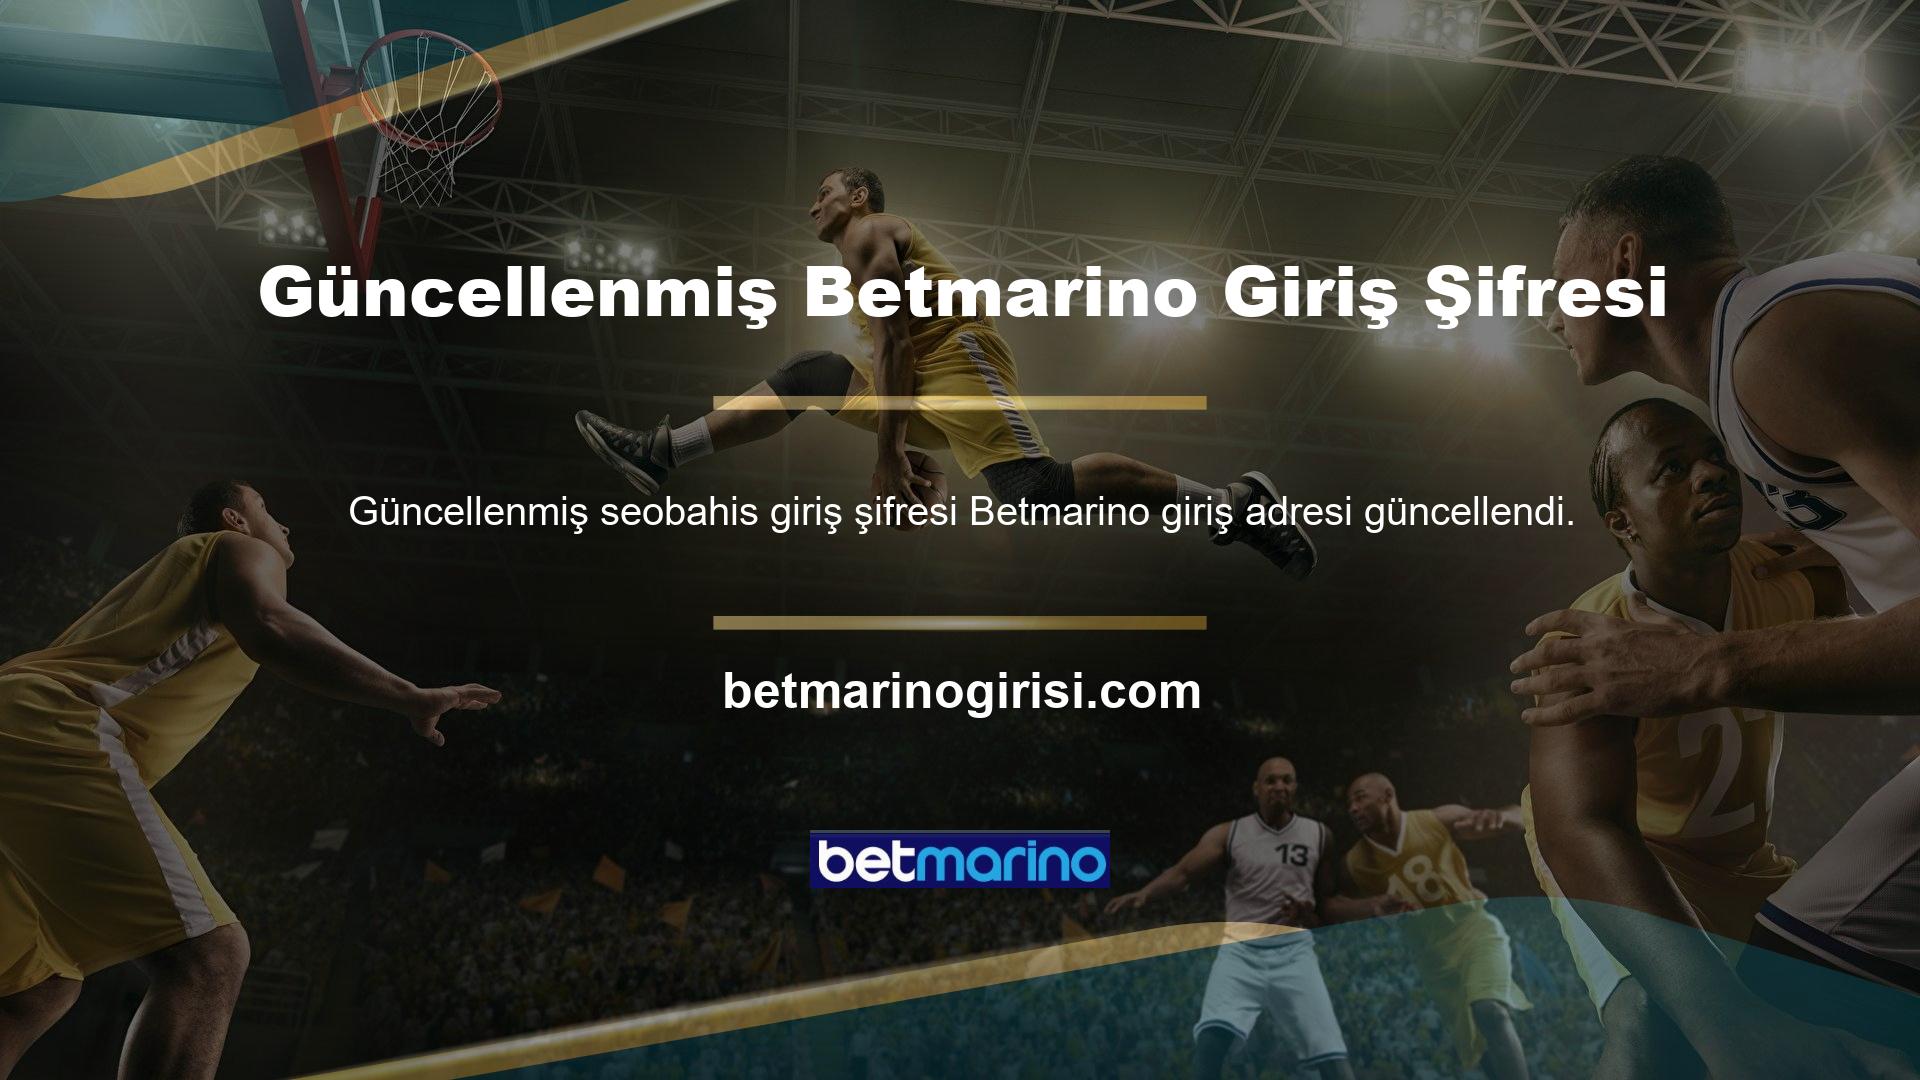 Güncel giriş adresi Betmarino'tir